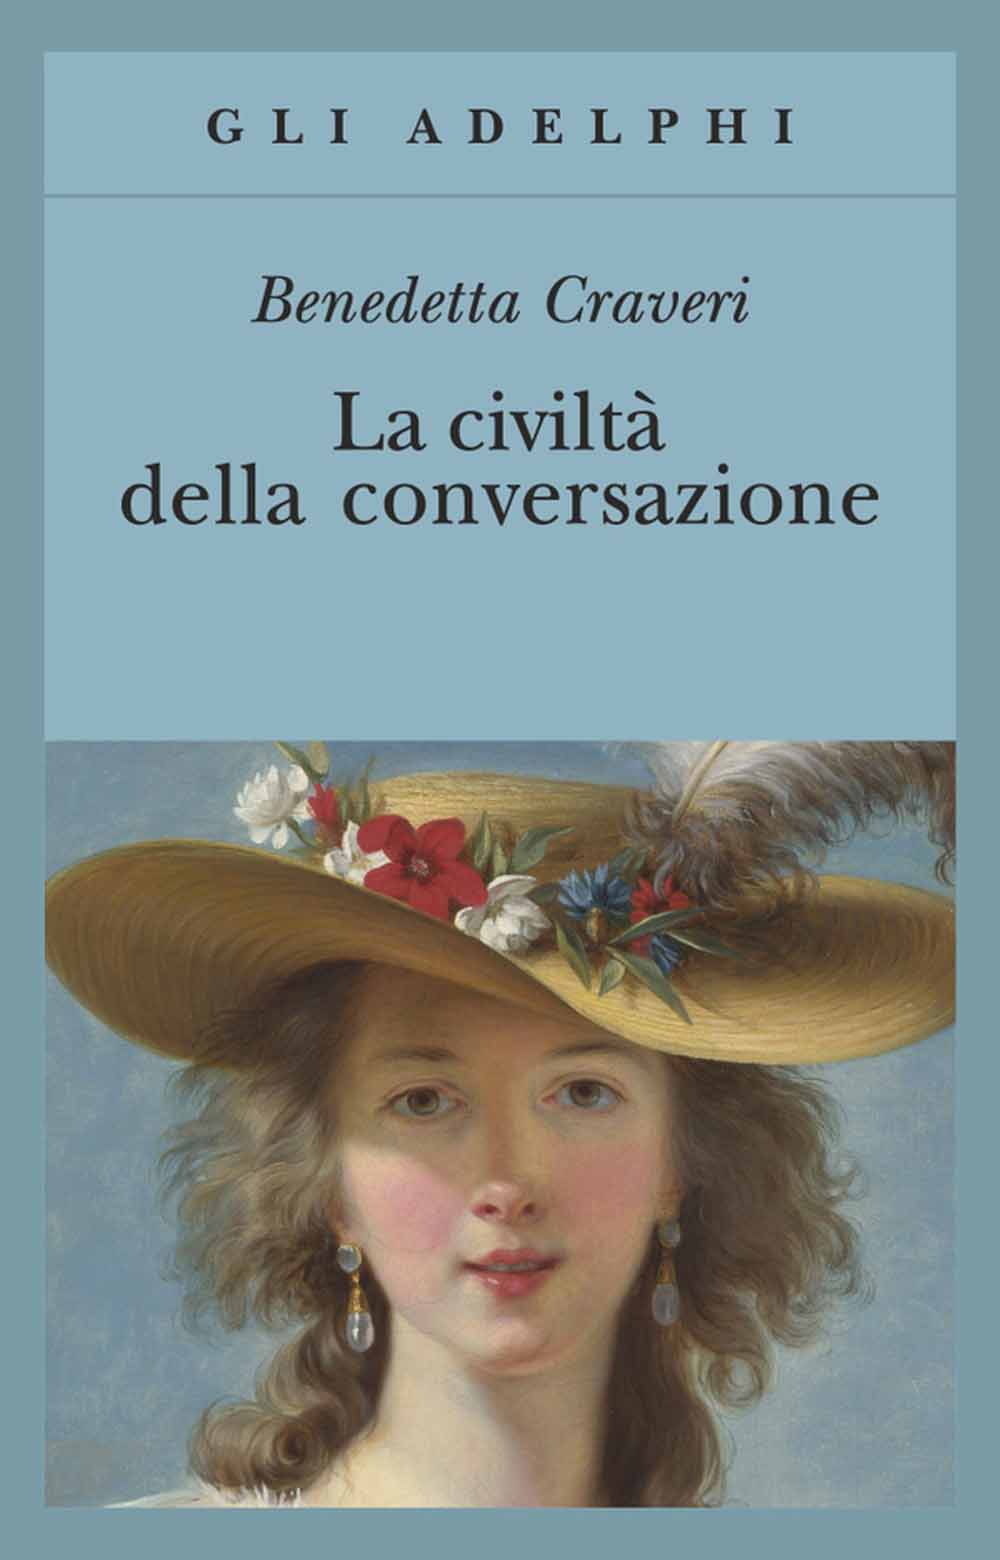 Libri Benedetta Craveri - La Civilta Della Conversazione NUOVO SIGILLATO, EDIZIONE DEL 24/05/2006 SUBITO DISPONIBILE